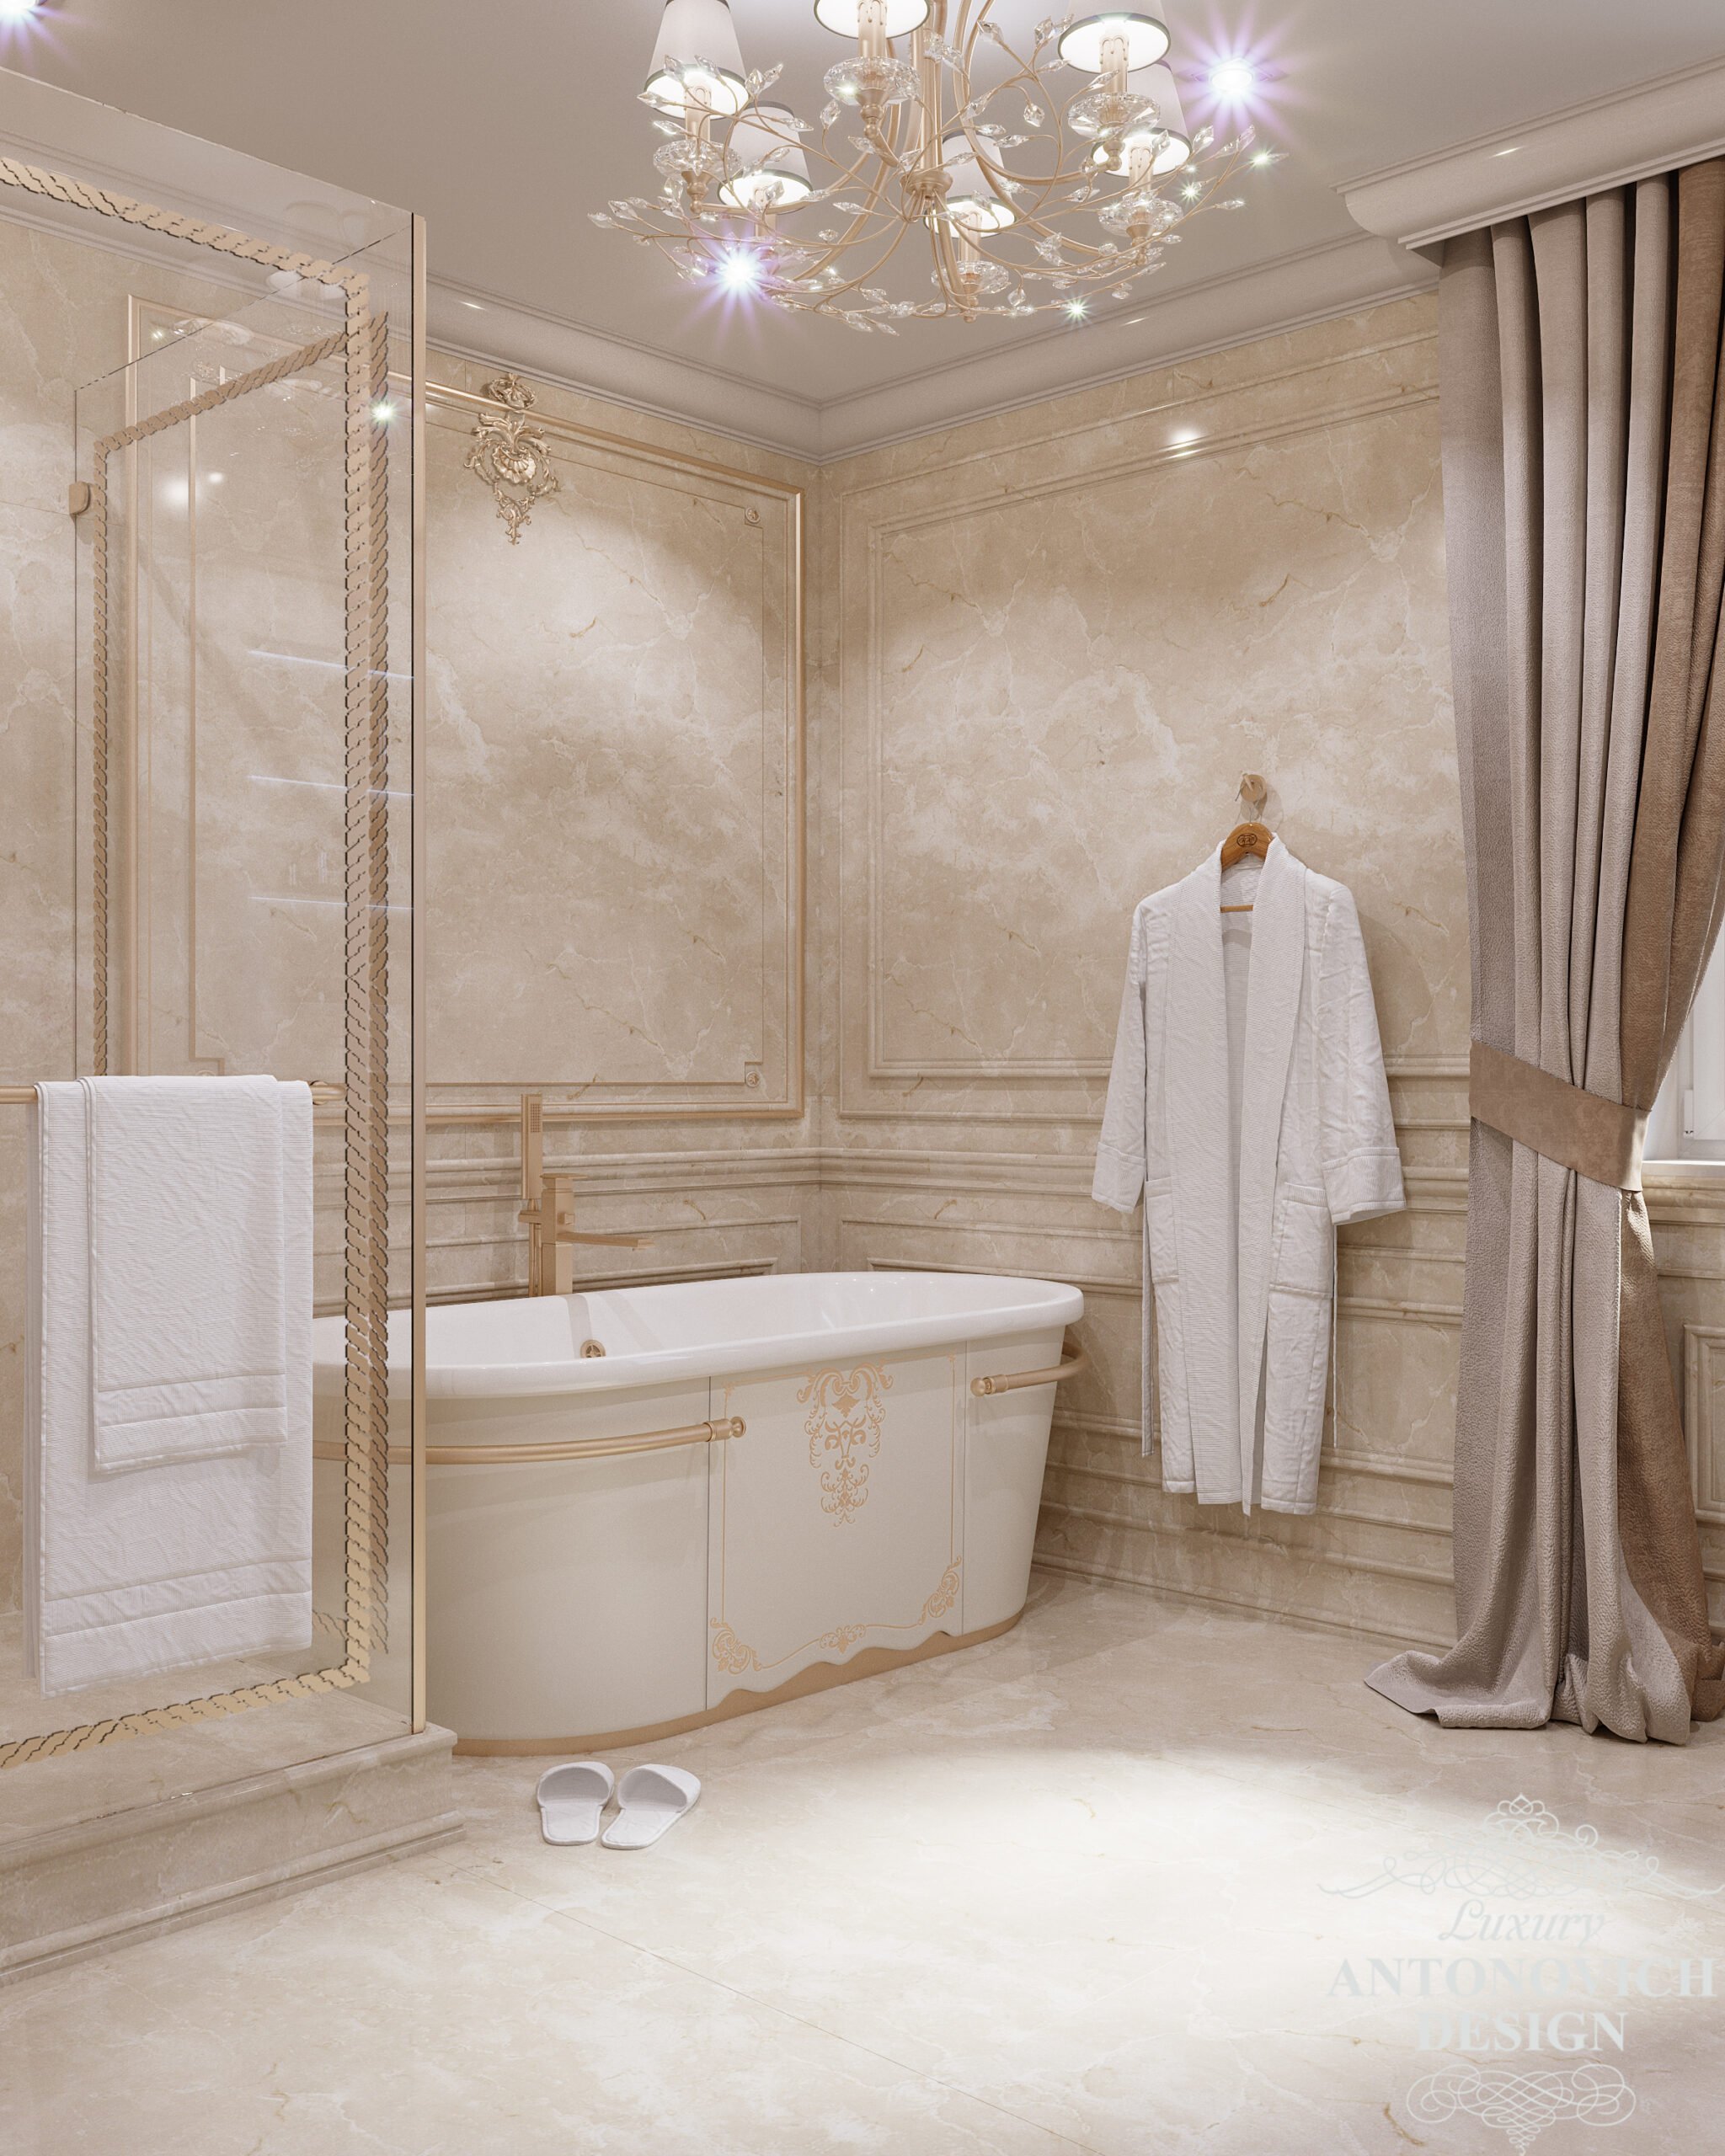 Витончена класична ванна у світлих відтінках з обробкою з дорогих матеріалів в дизайні приватного будинку